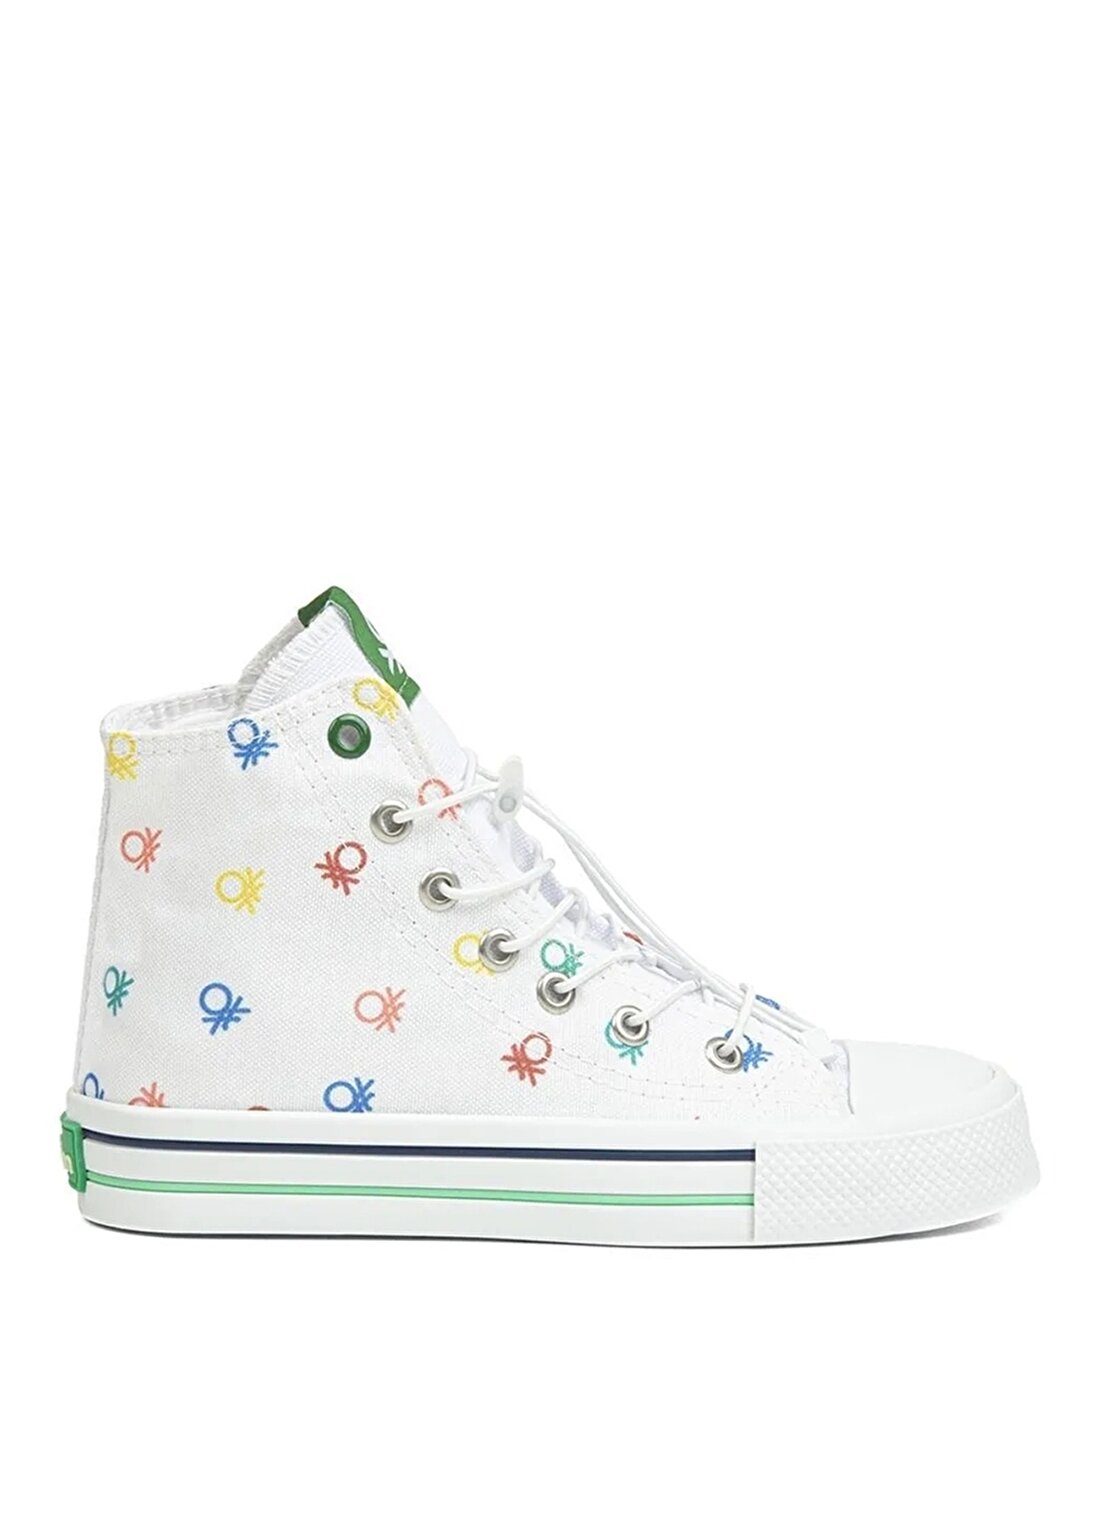 Benetton Beyaz Kız Çocuk Yürüyüş Ayakkabısı BN-30183